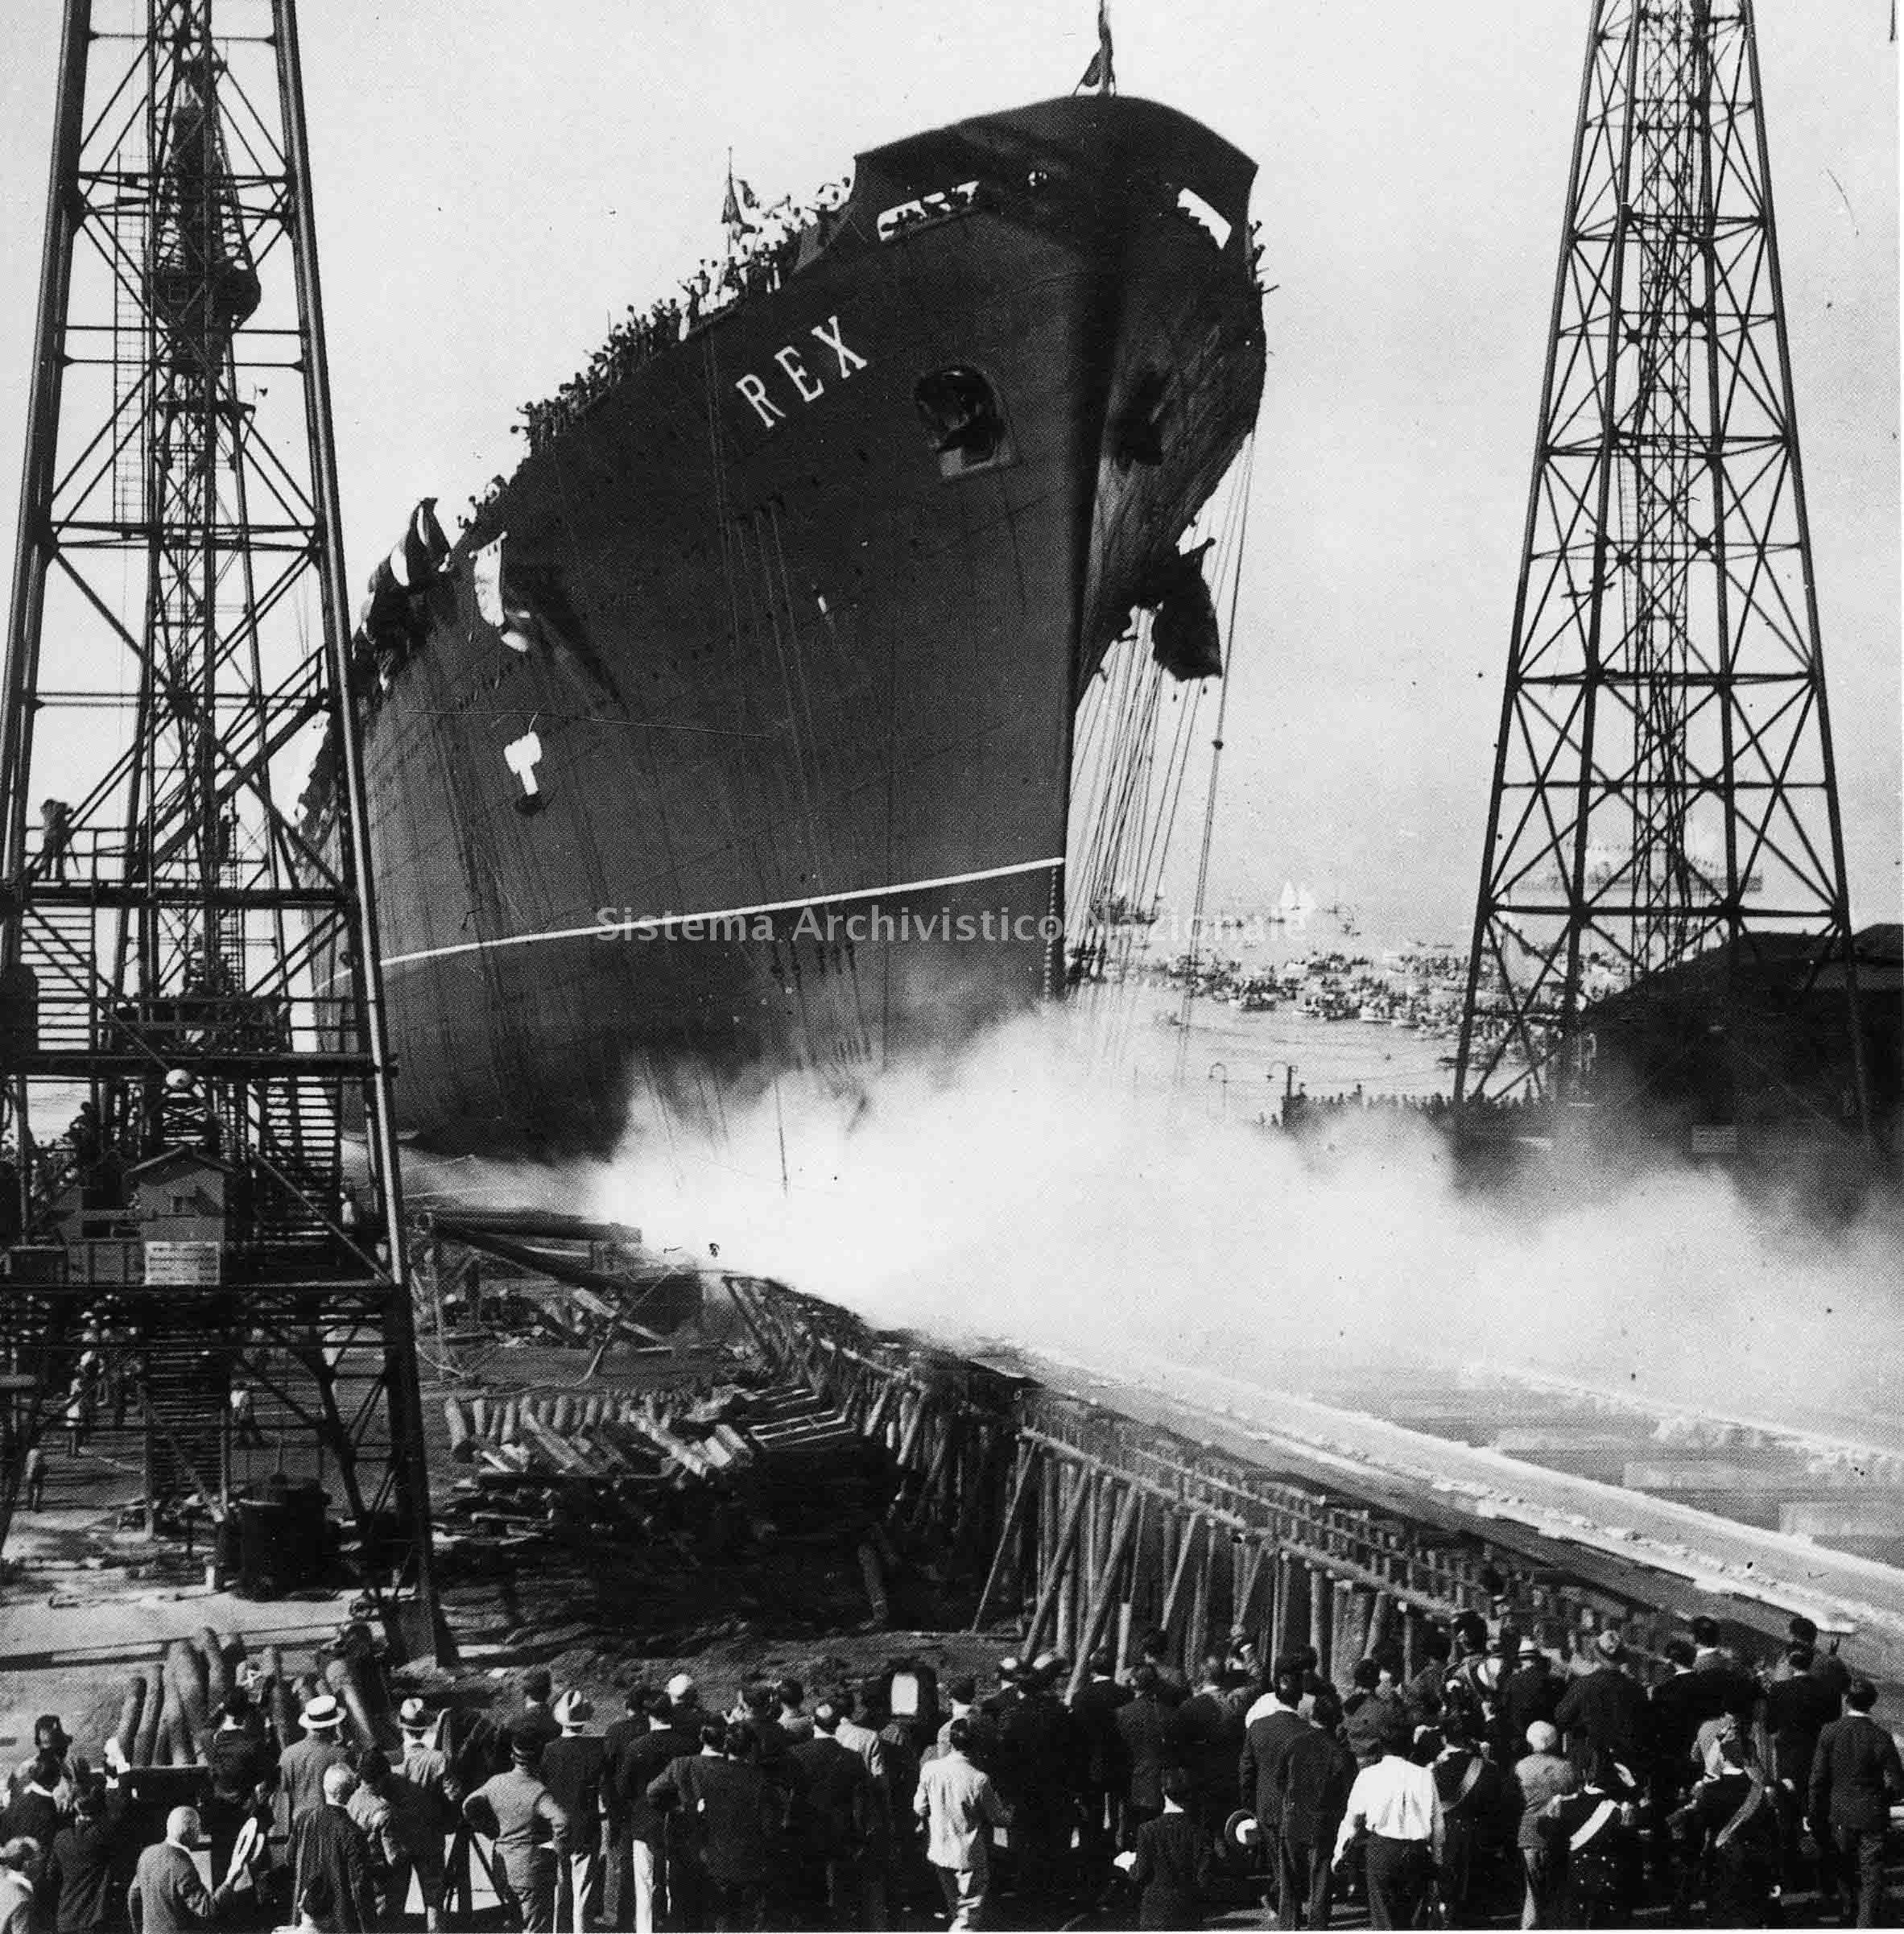   Varo della turbonave "Rex" nel cantiere navale Ansaldo di Genova Sestri Ponente, 1931 (Fondazione Ansaldo, fondo Ansaldo).
